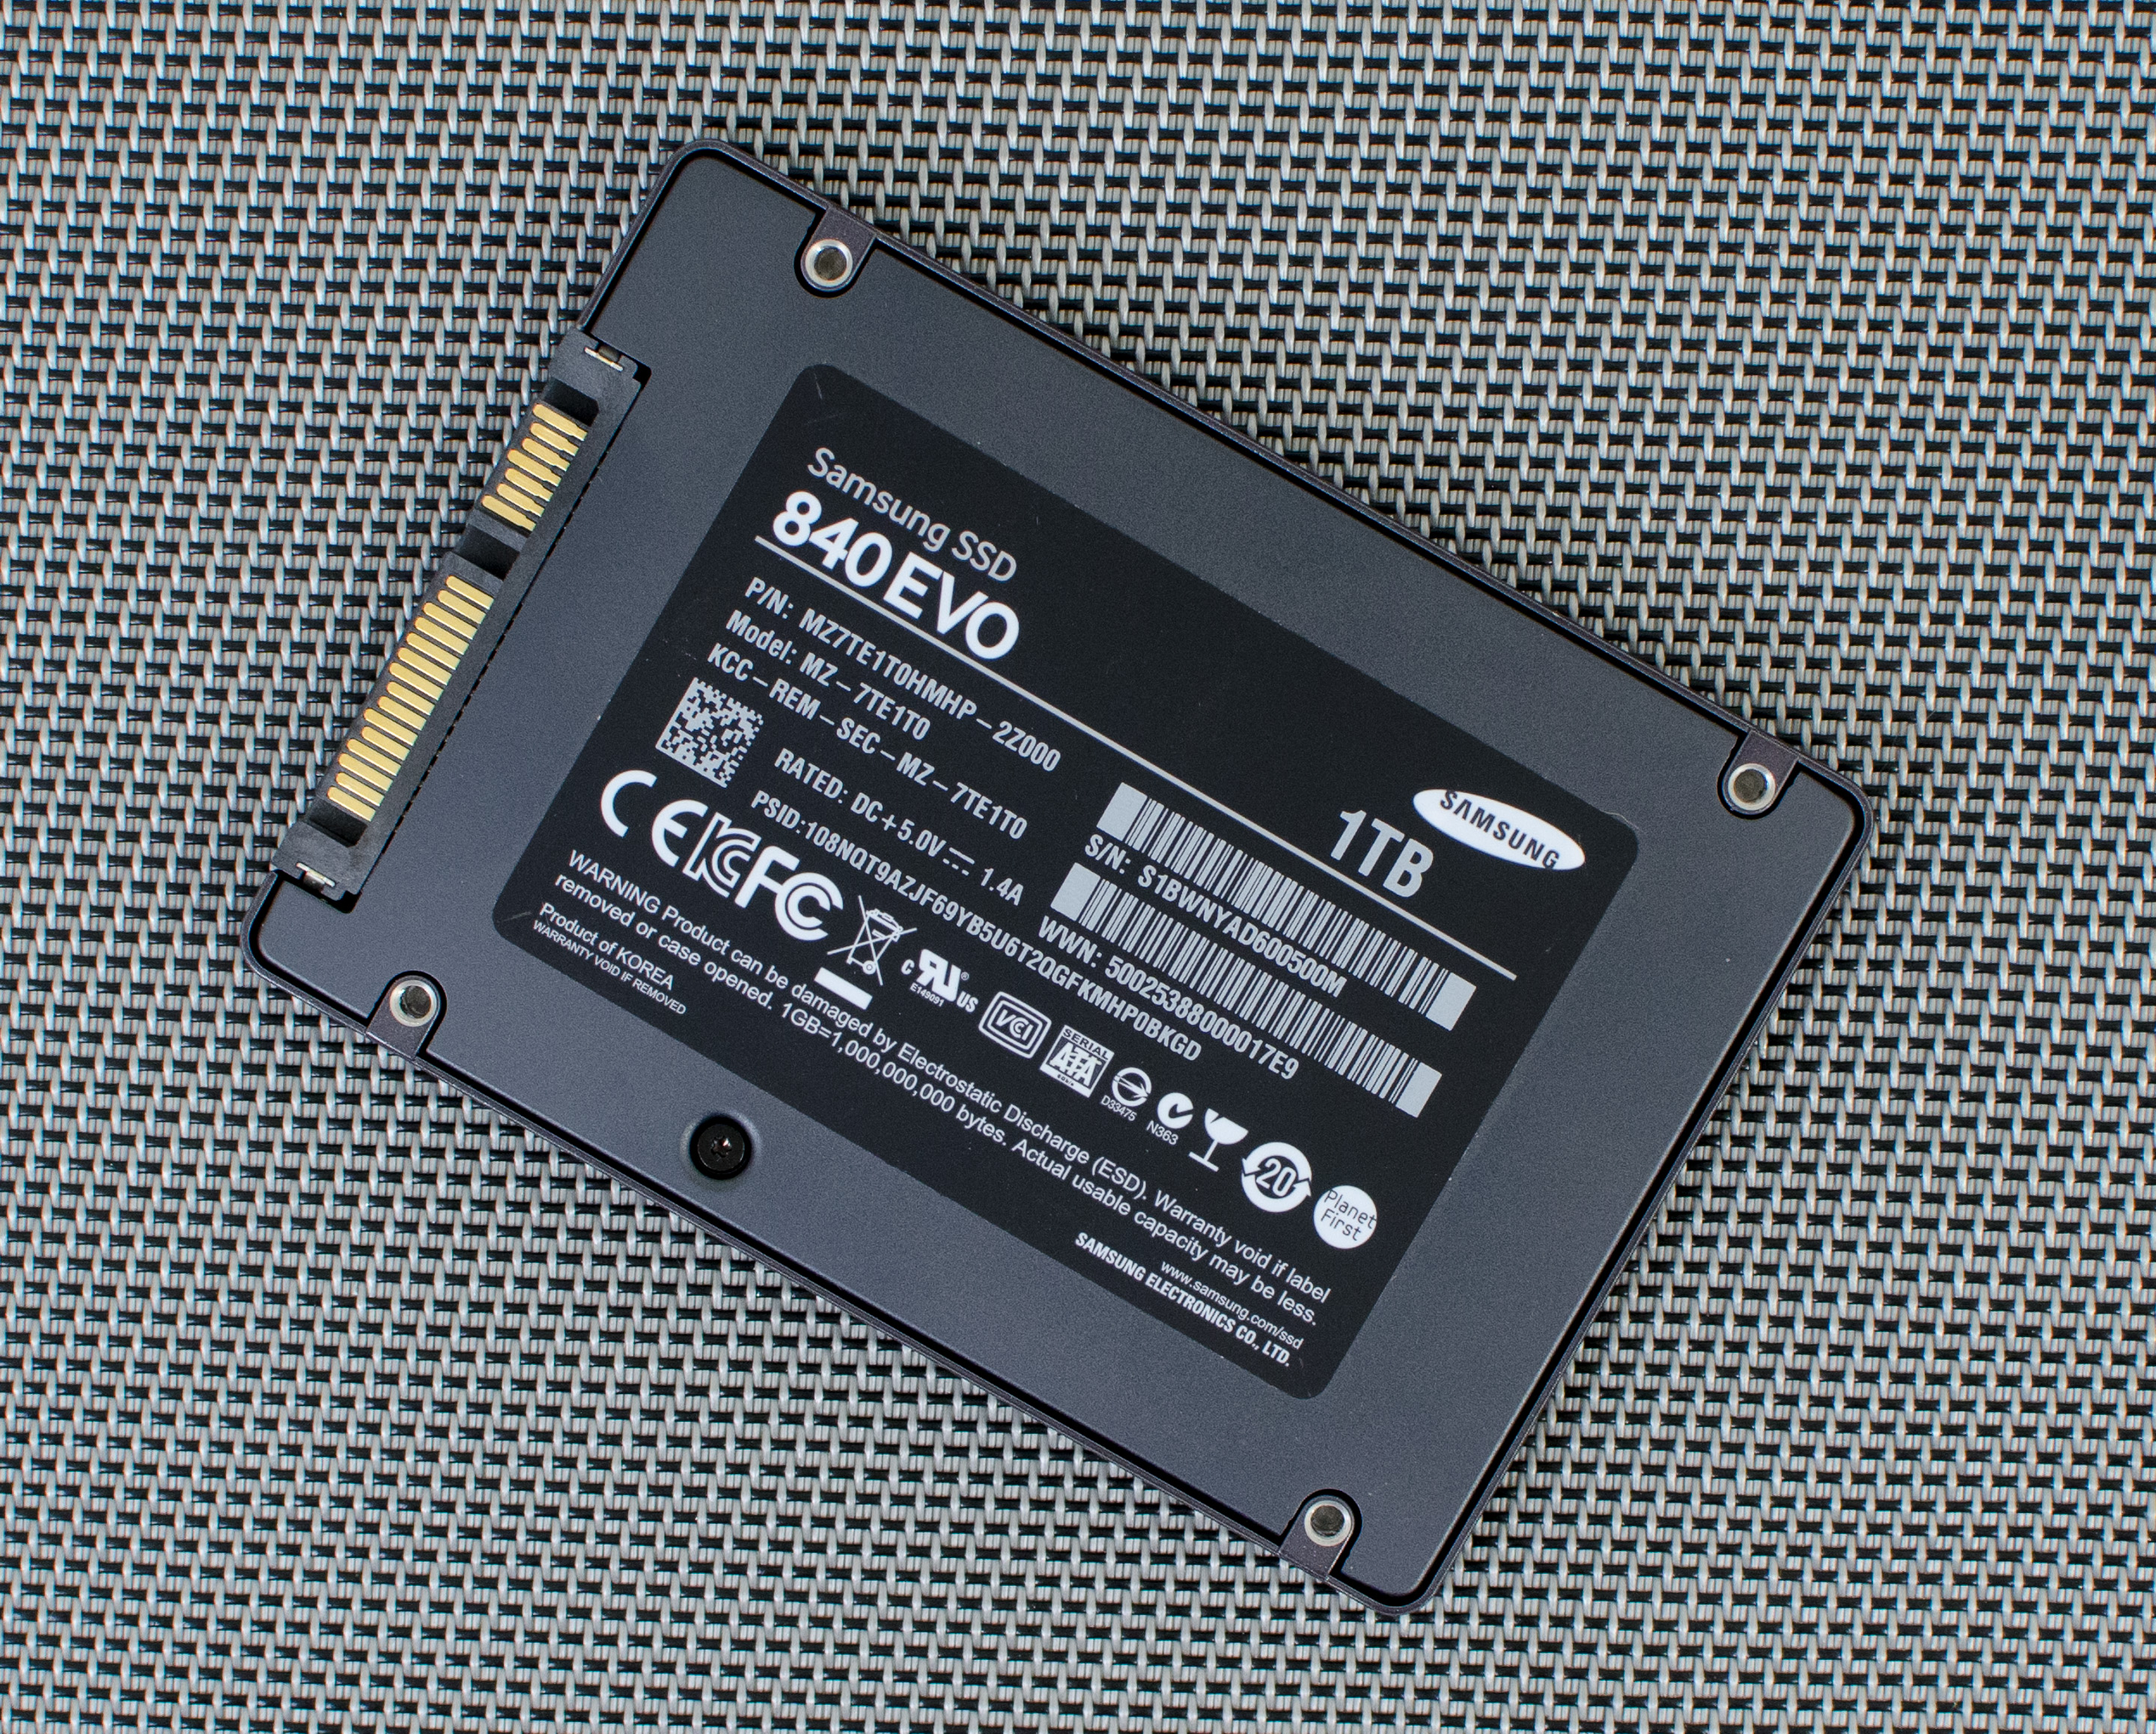 Samsung SSD 840 EVO 120GB, 250GB, 500GB, 750GB & 1TB Models Tested